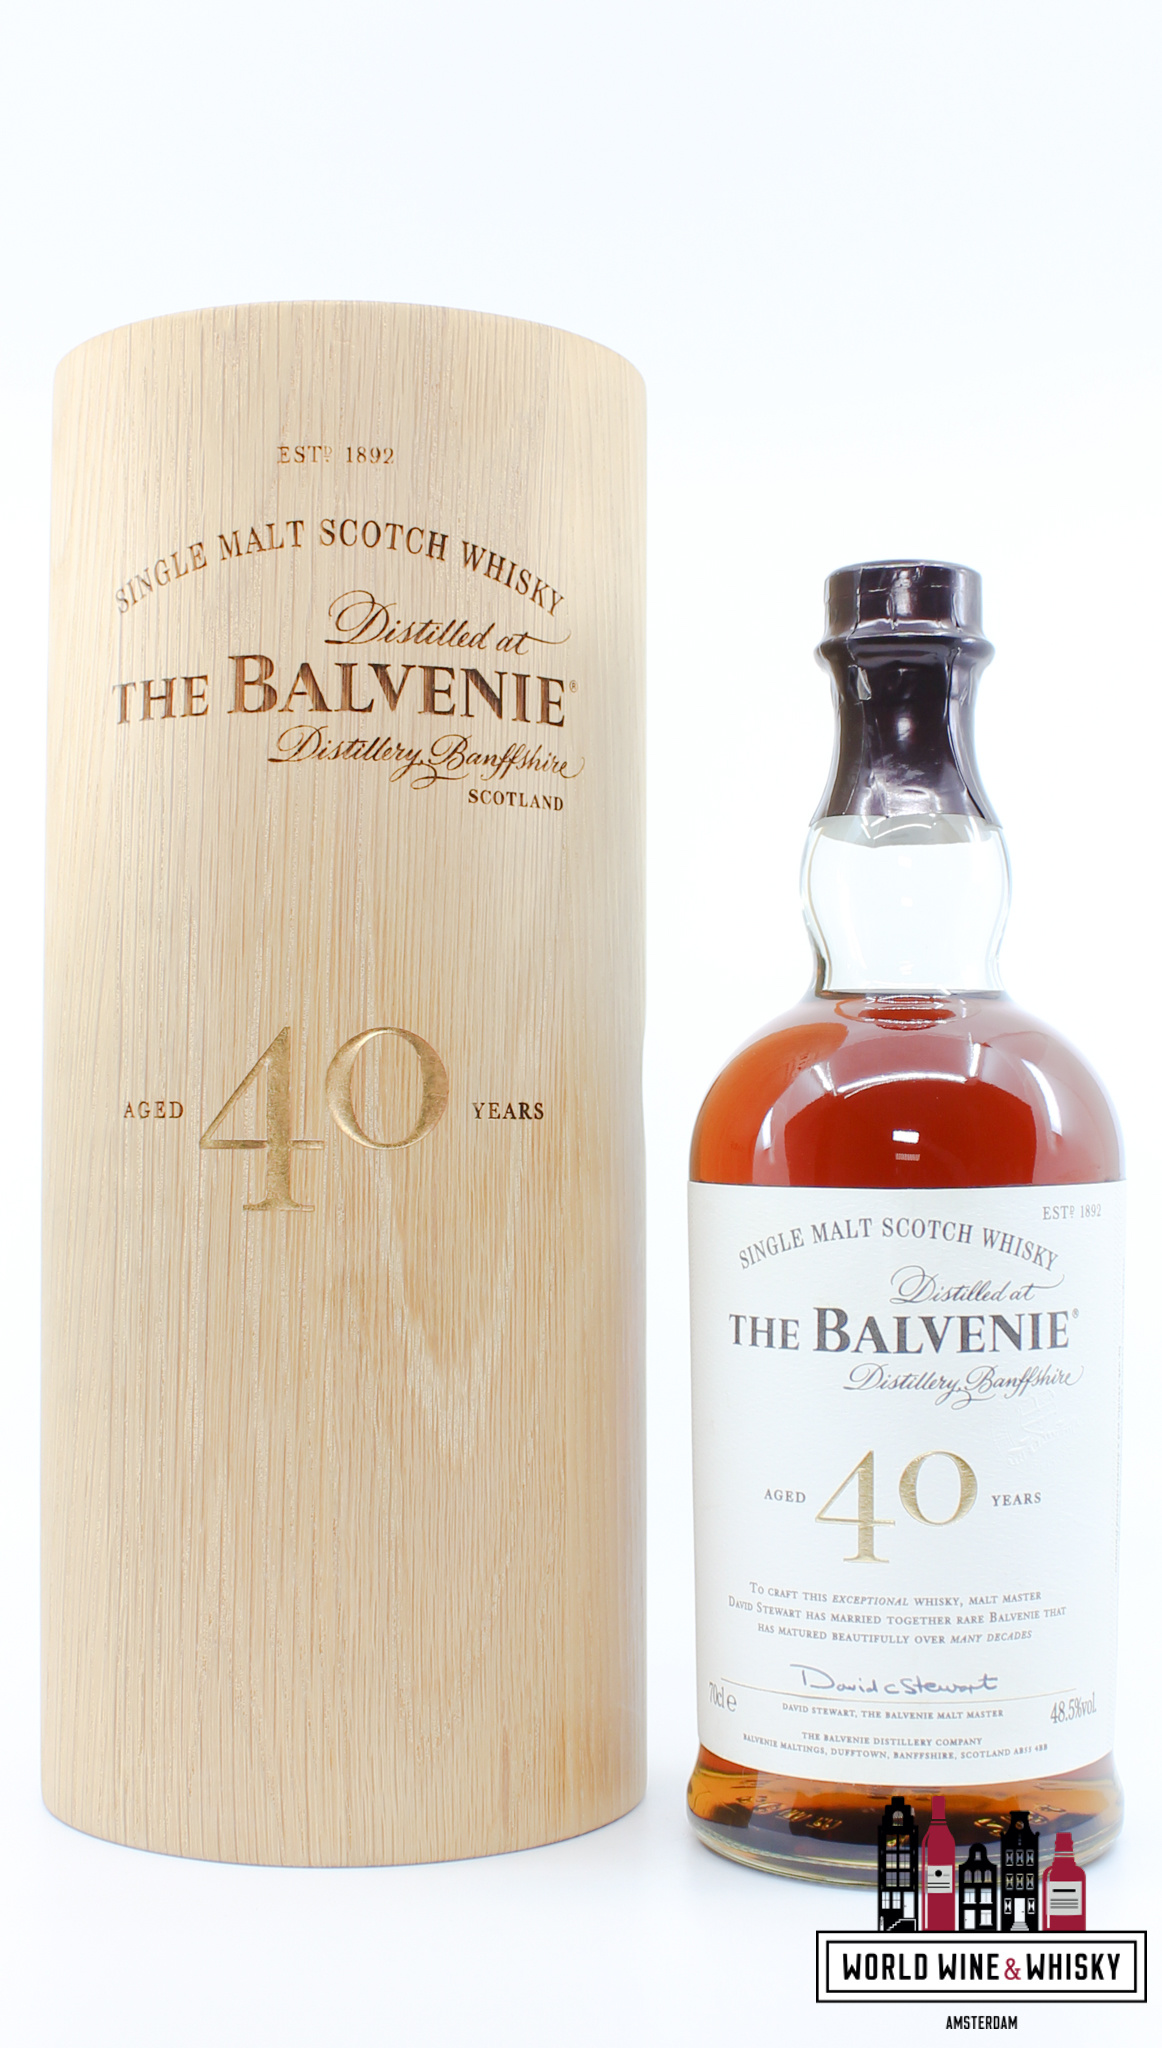 Balvenie The Balvenie 40 Years Old - Batch 7 48.5% (full set)